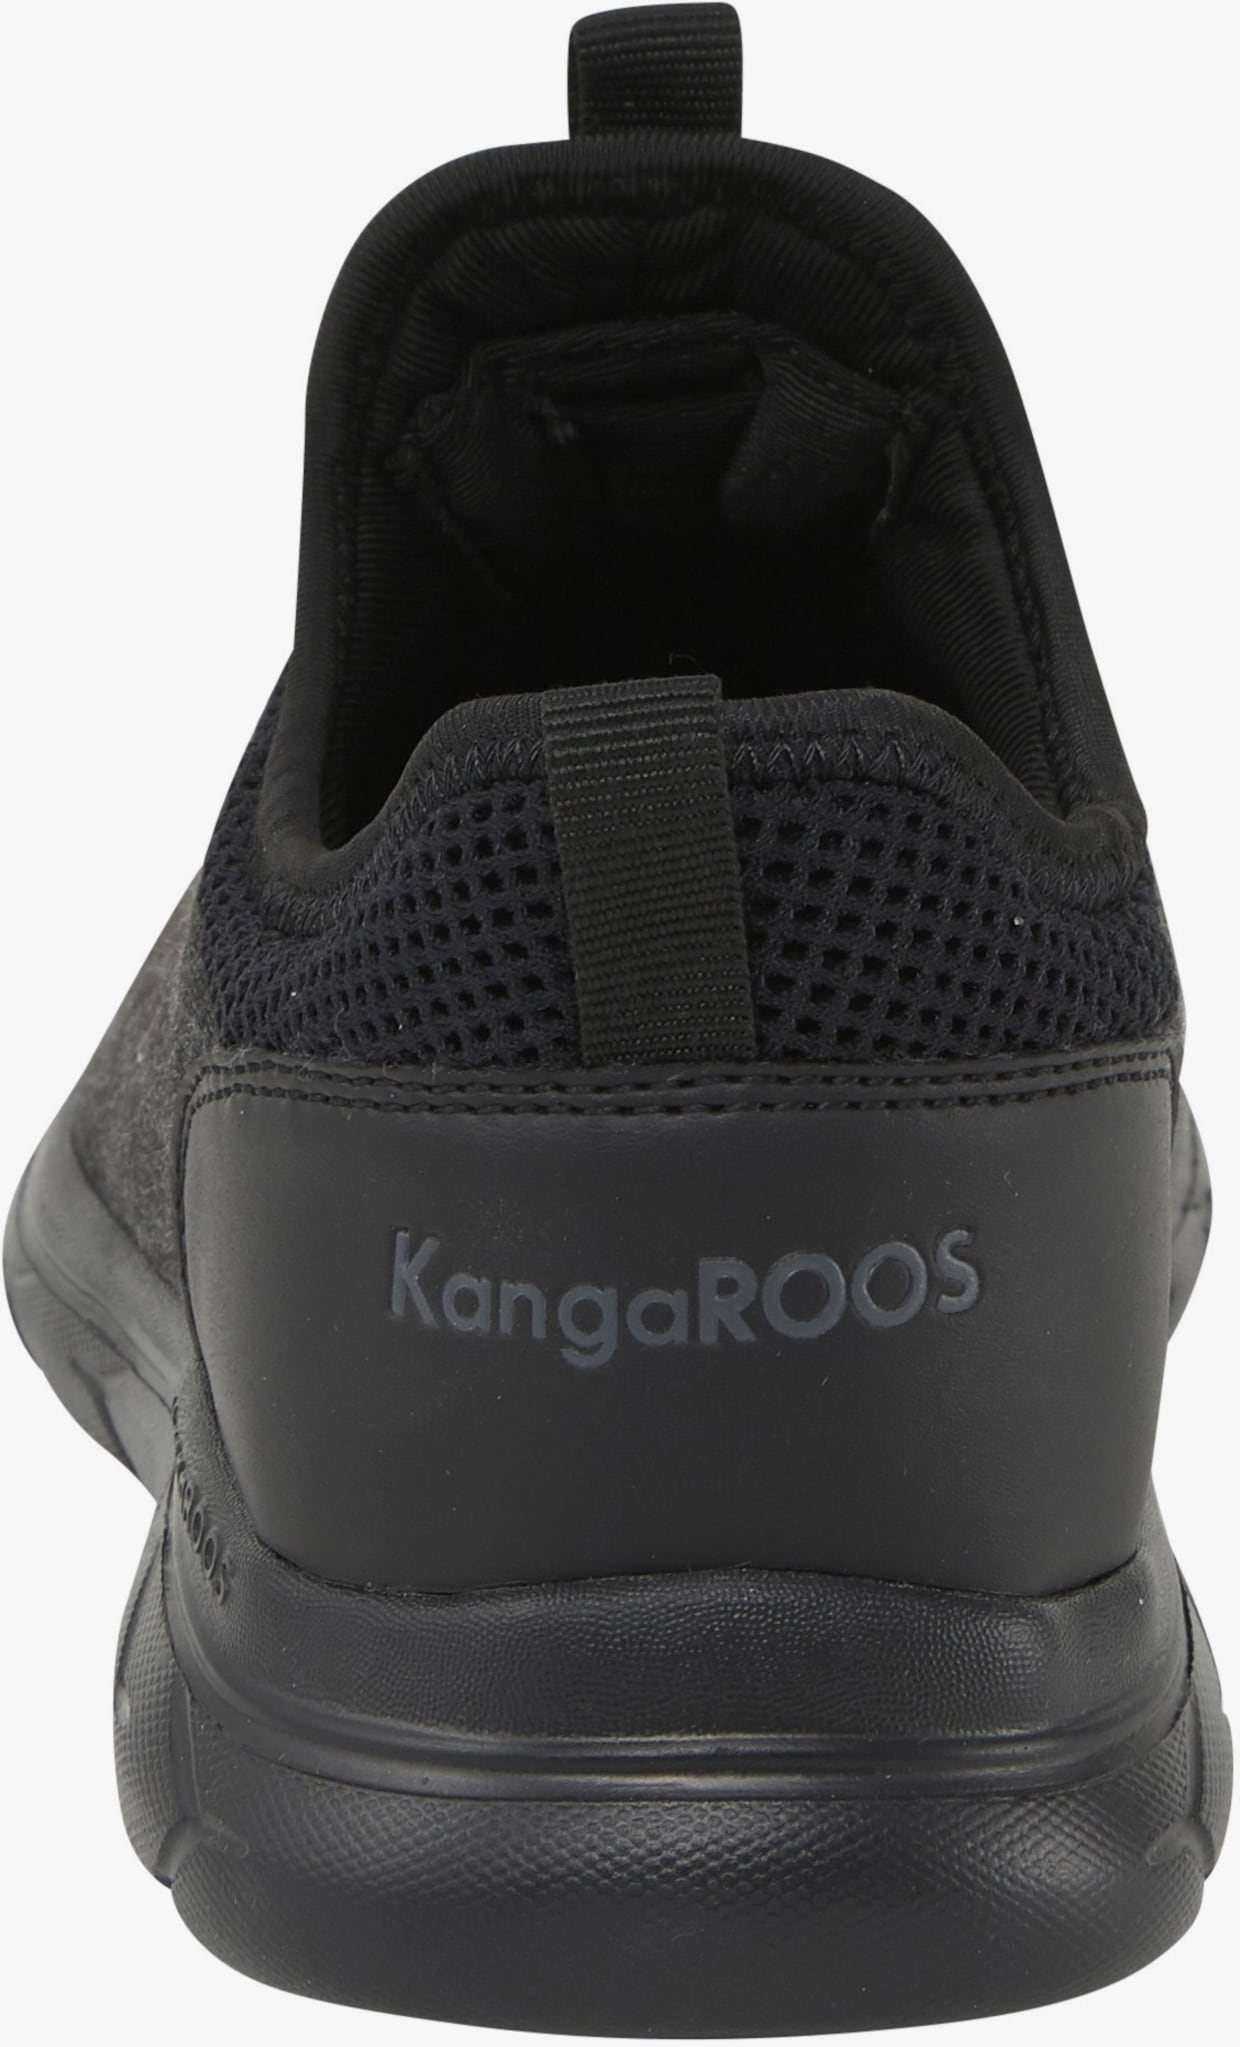 KangaROOS Baskets - noir